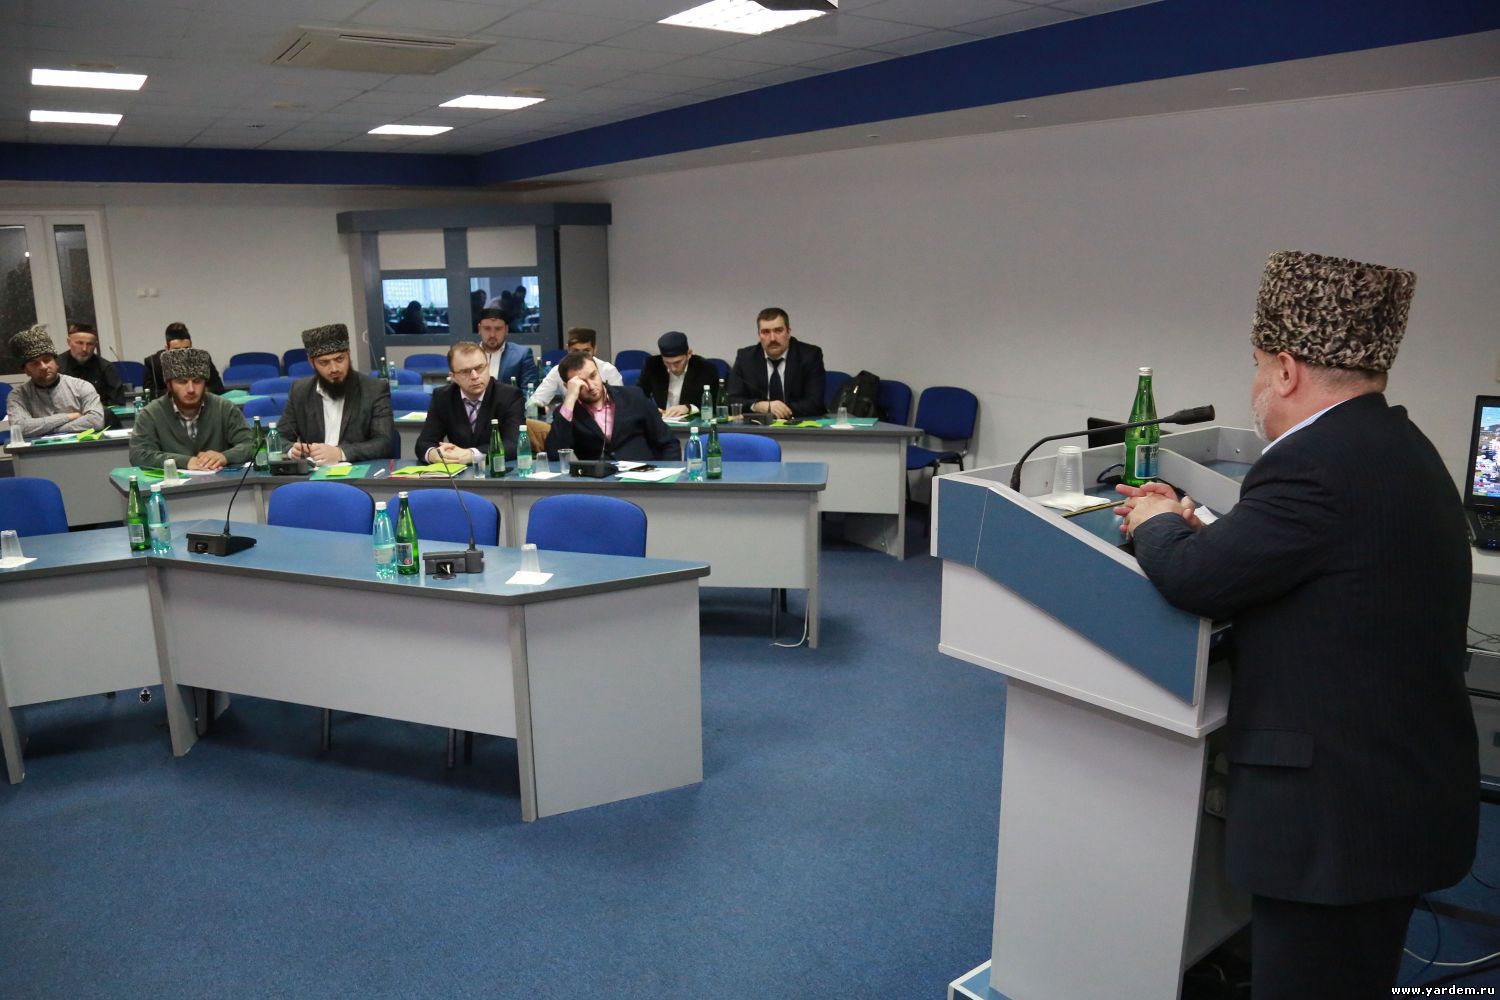 Вице-президент фонда "Ярдэм" принял участие в работе курсов в Пятигорске